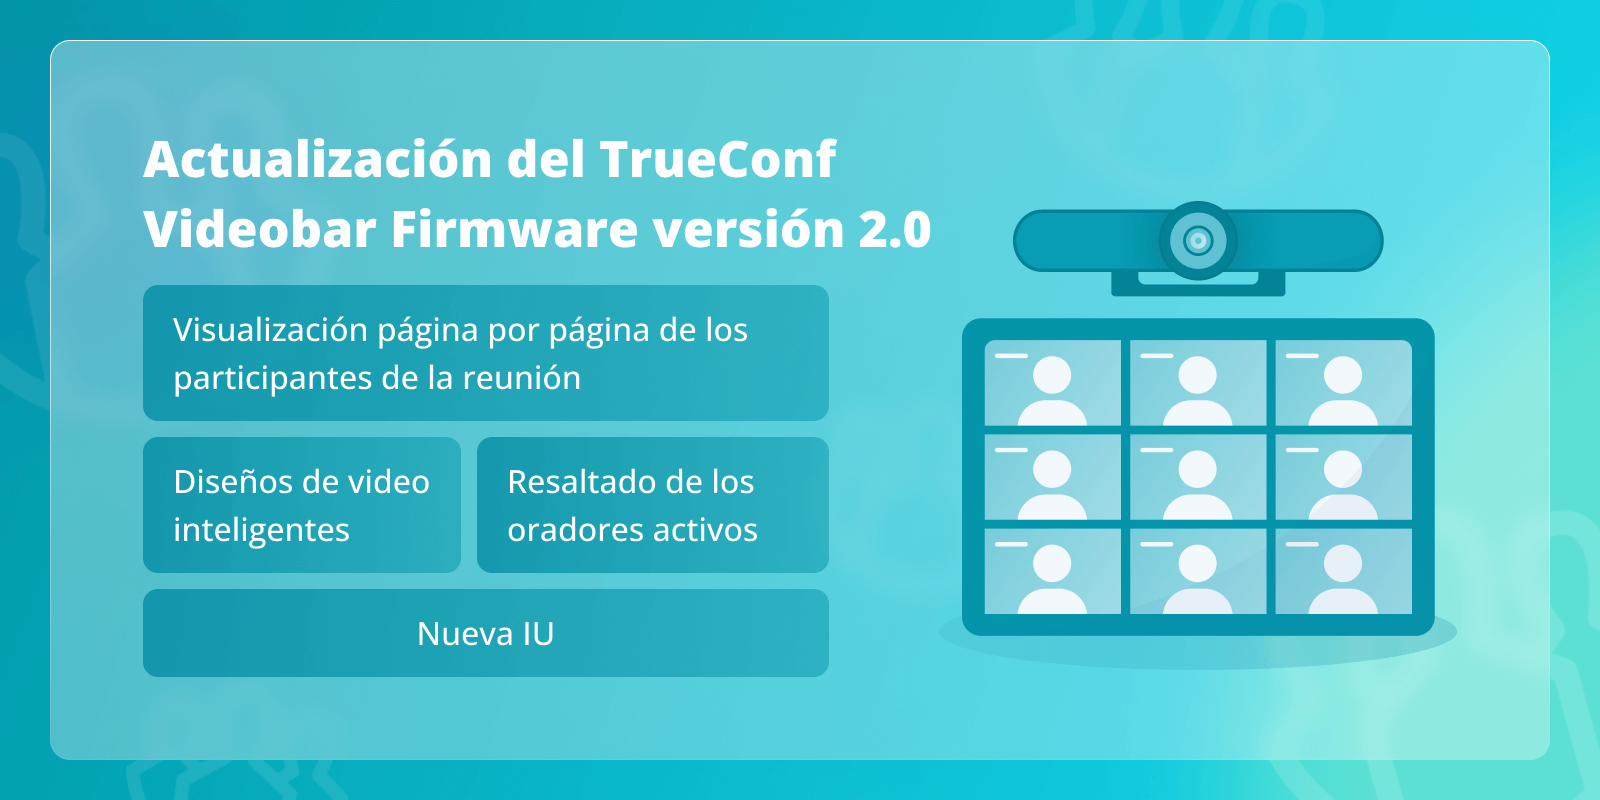 TrueConf Videobar 2.0: nueva interfaz de usuario (IU), resaltado de orador activo y más 4